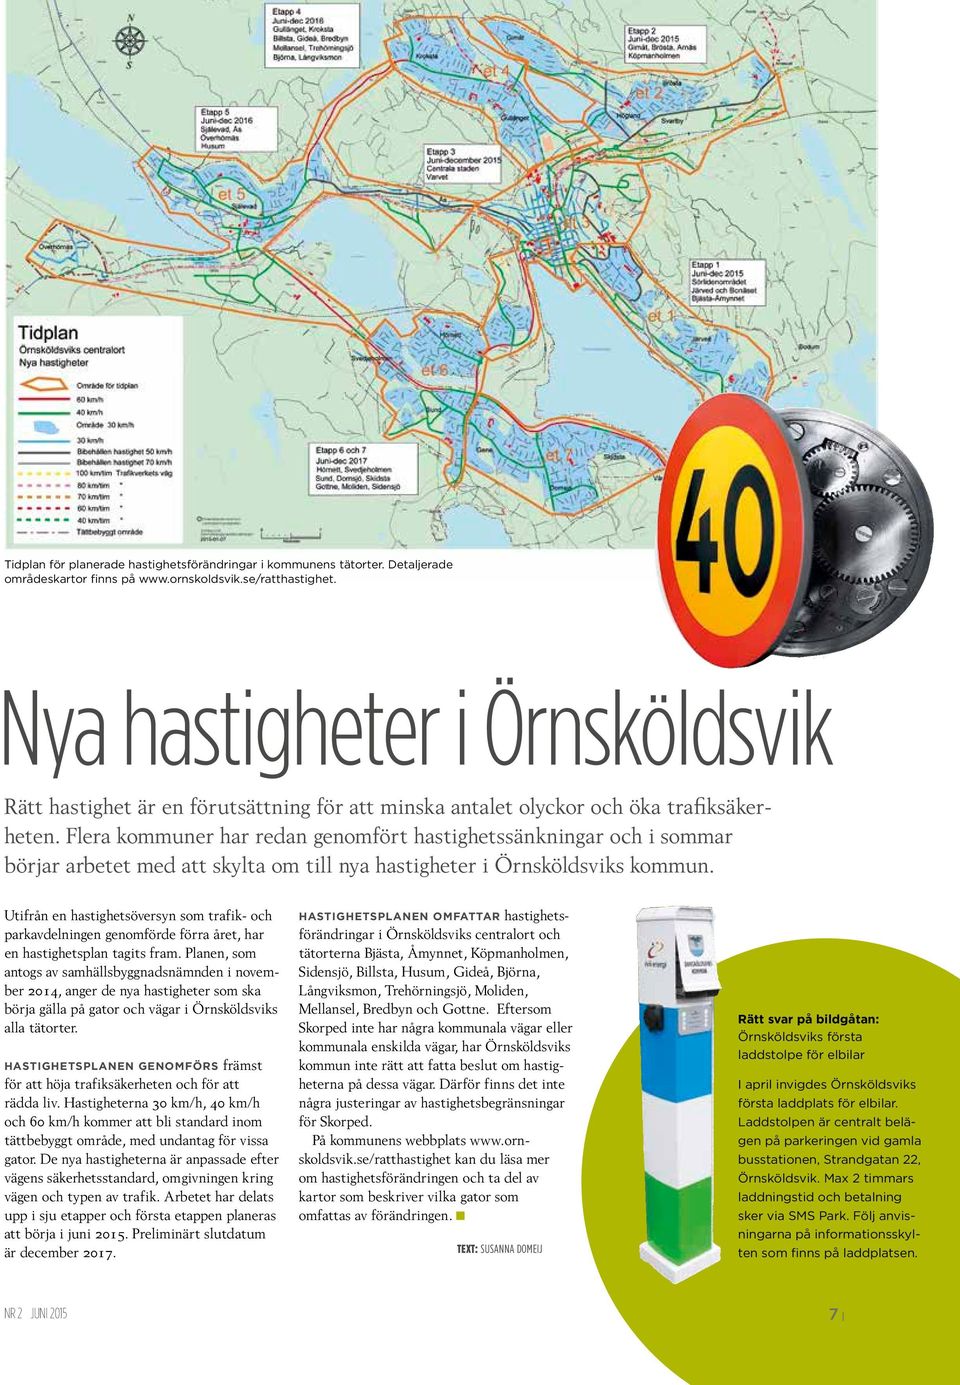 Flera kommuner har redan genomfört hastighetssänkningar och i sommar börjar arbetet med att skylta om till nya hastigheter i Örnsköldsviks kommun.